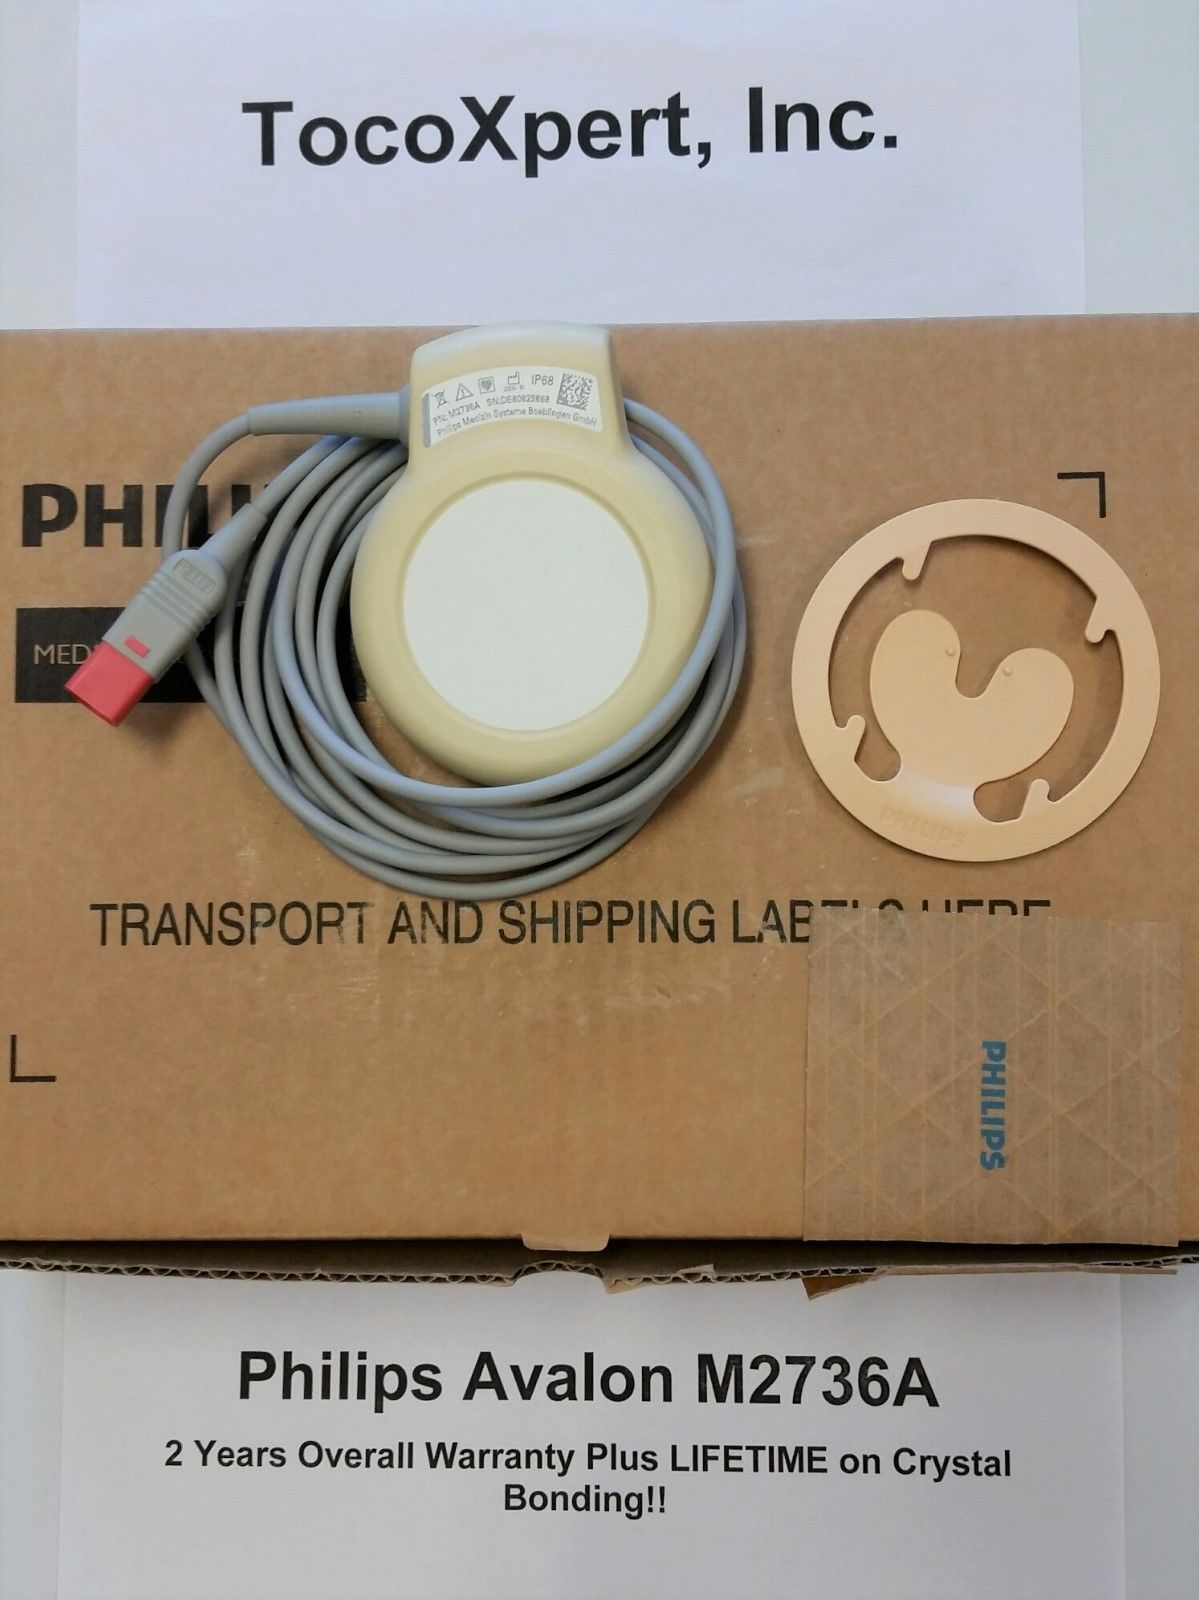 Philips M2736A Avalon Ultrasound Transducer $1189 - LIFETIME Warranty! Brand New